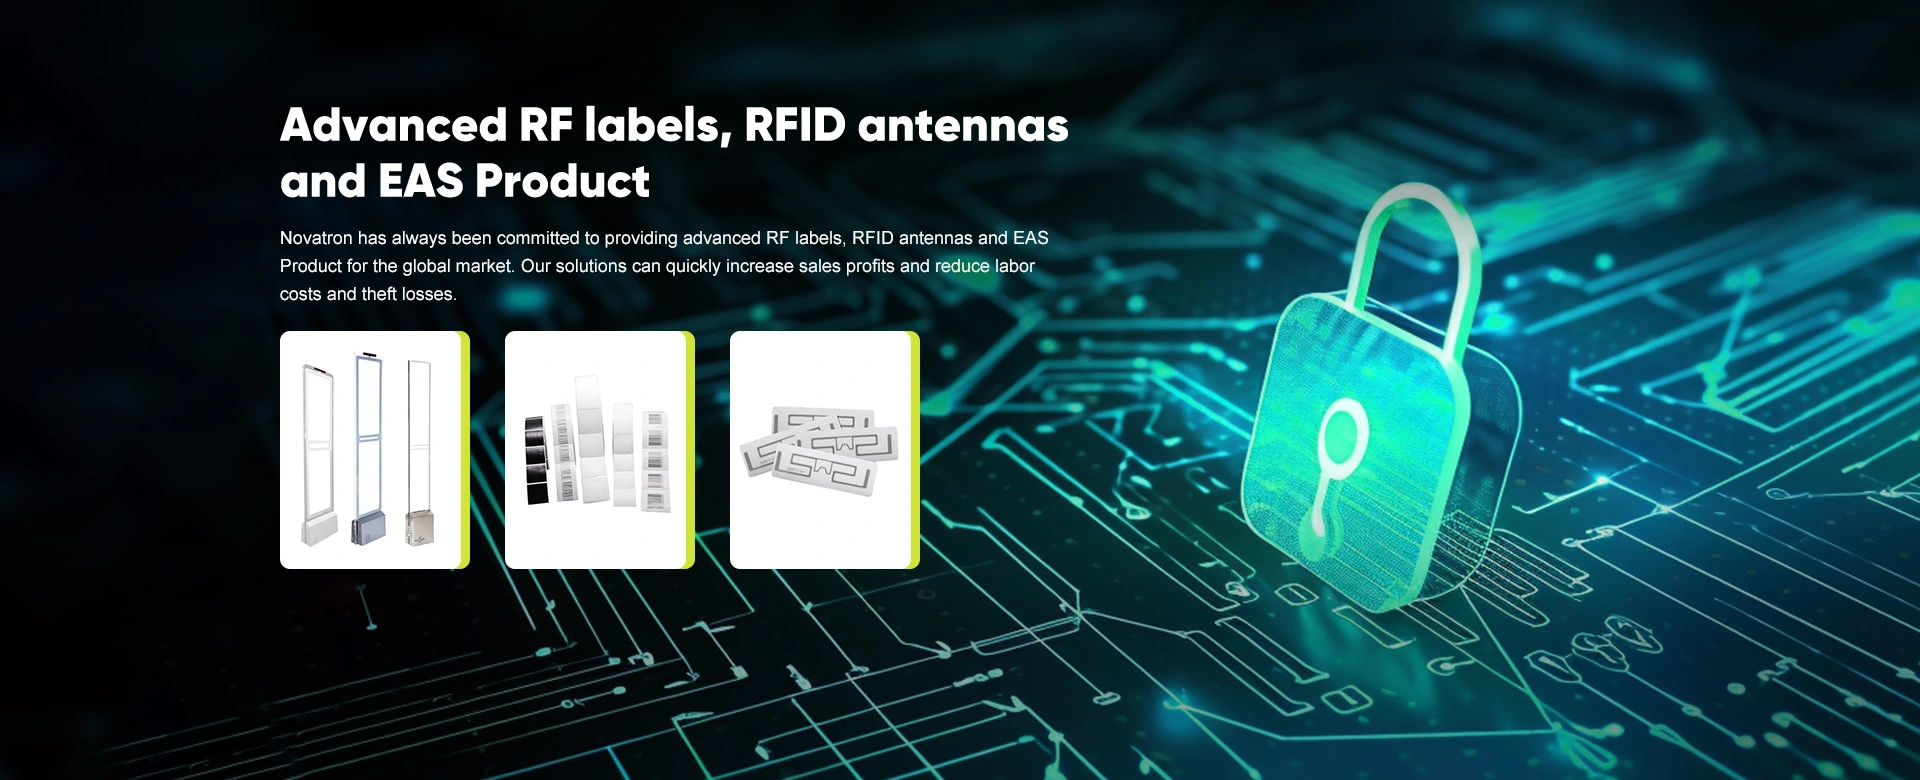 ฉลาก RF ขั้นสูงเสาอากาศ RFID และผลิตภัณฑ์ EAS